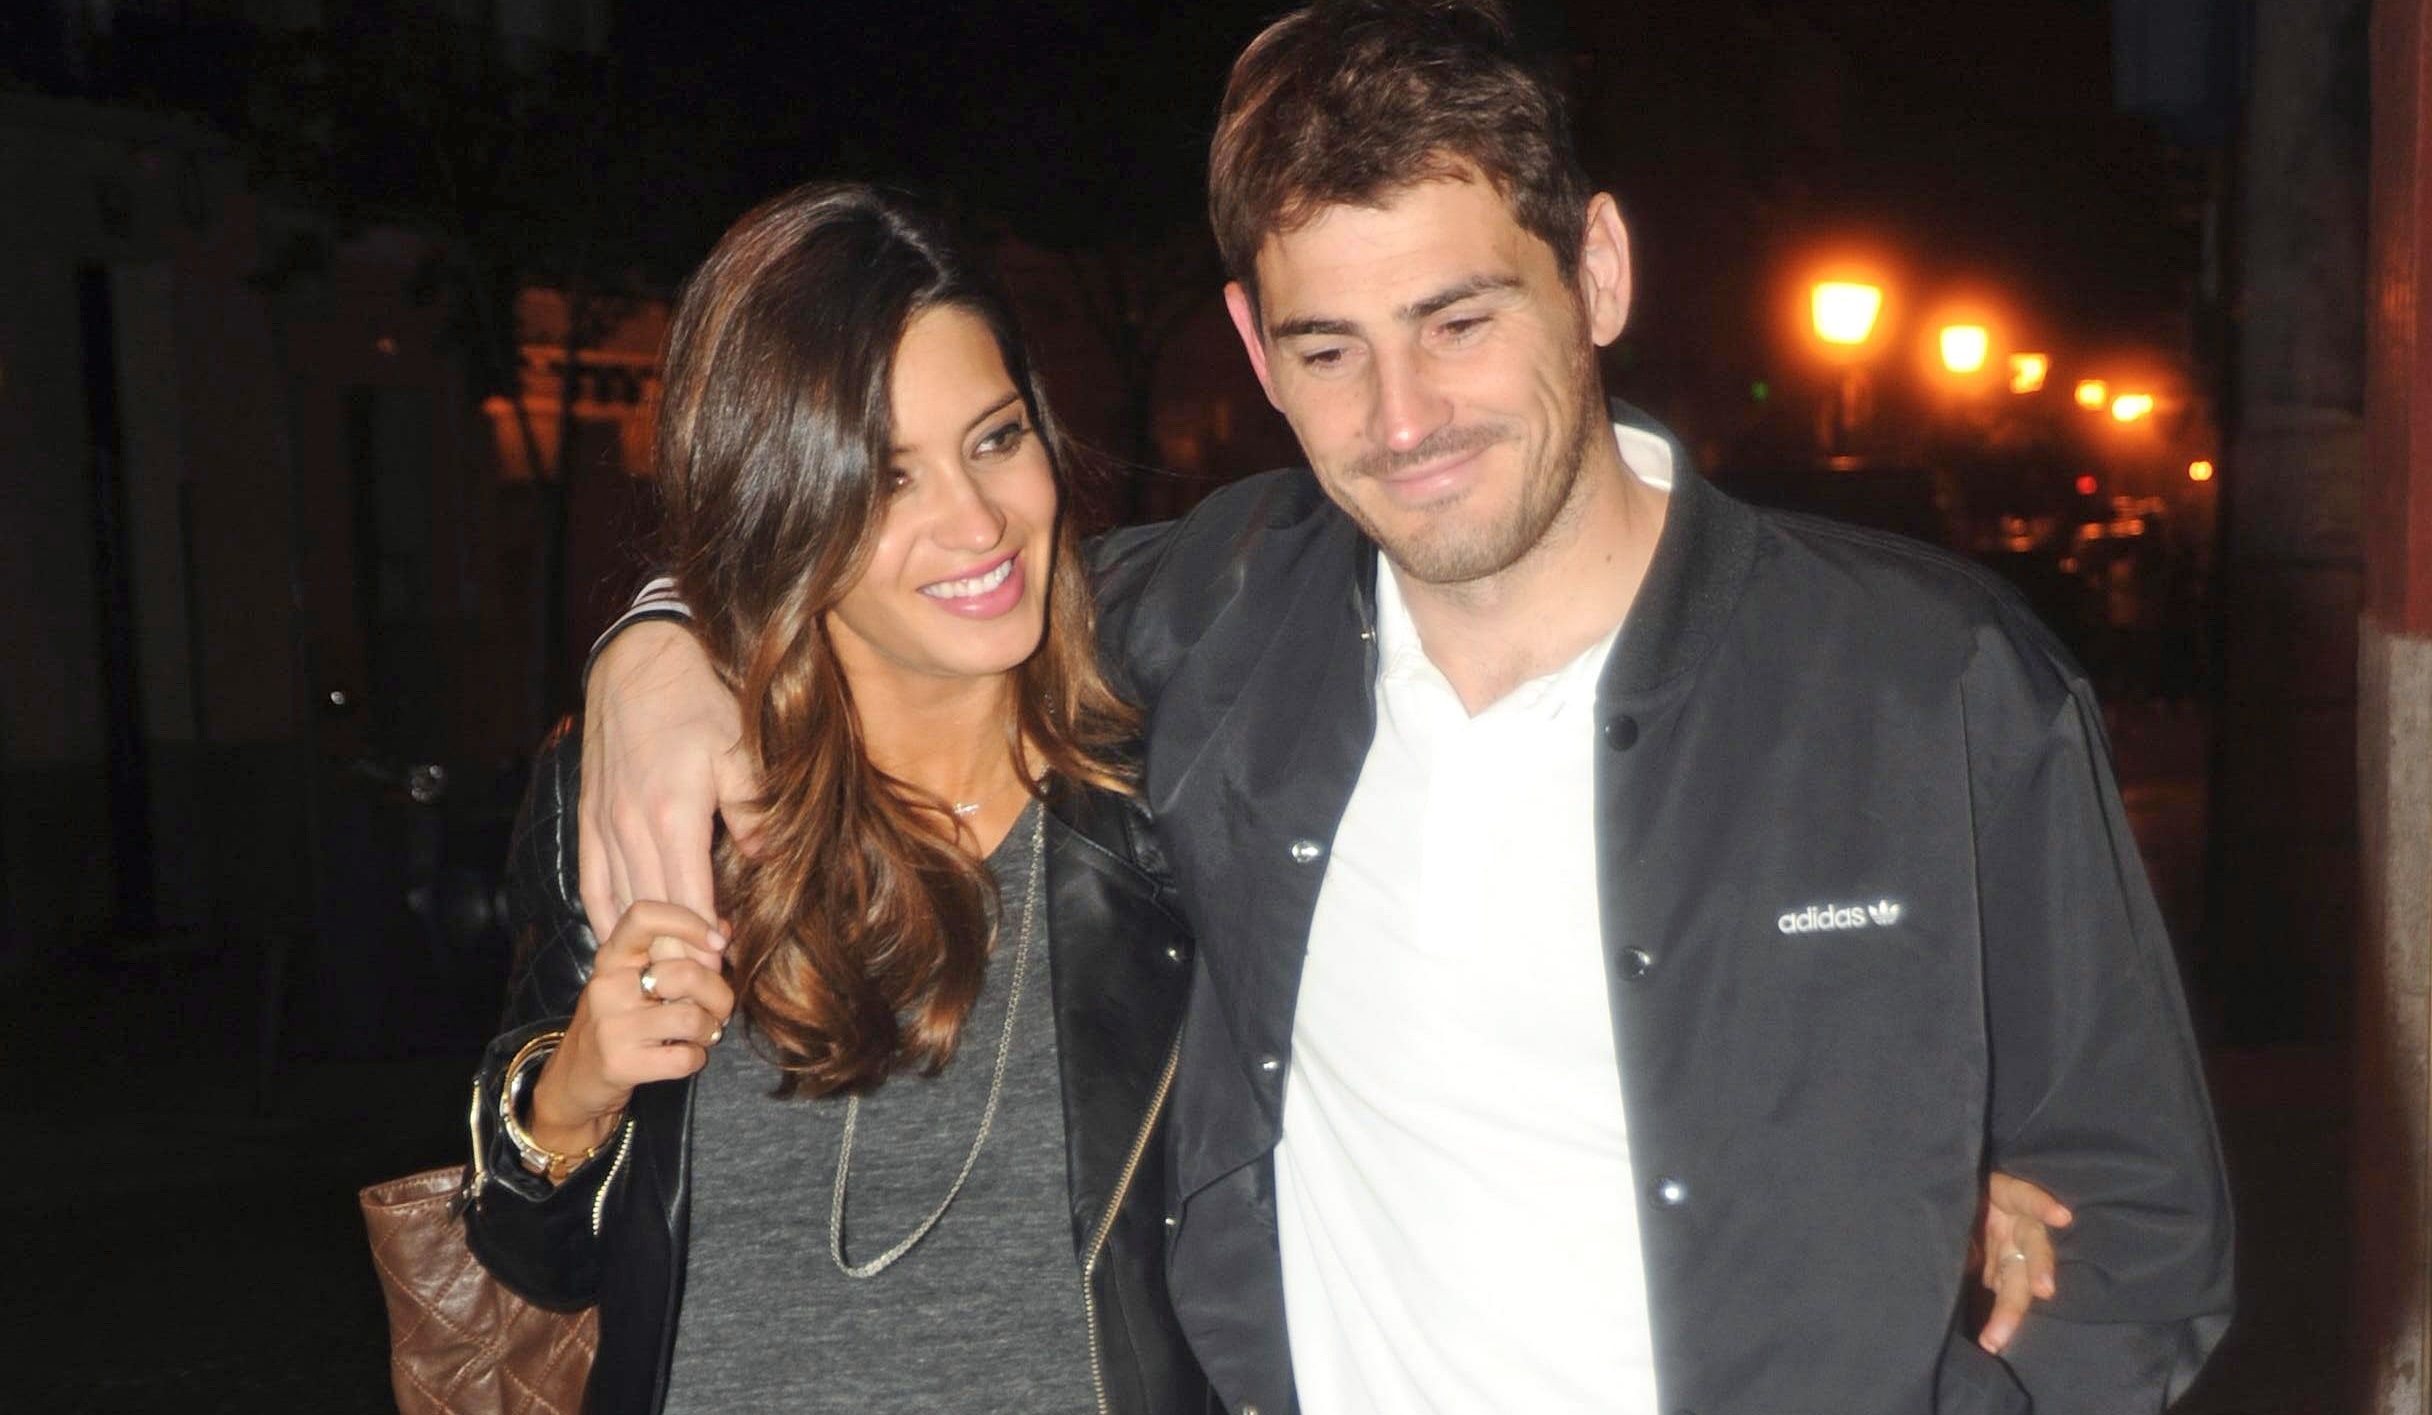 Sara Carbonero e Iker Casillas se separan tras 11 años de relación, según 'Lecturas'